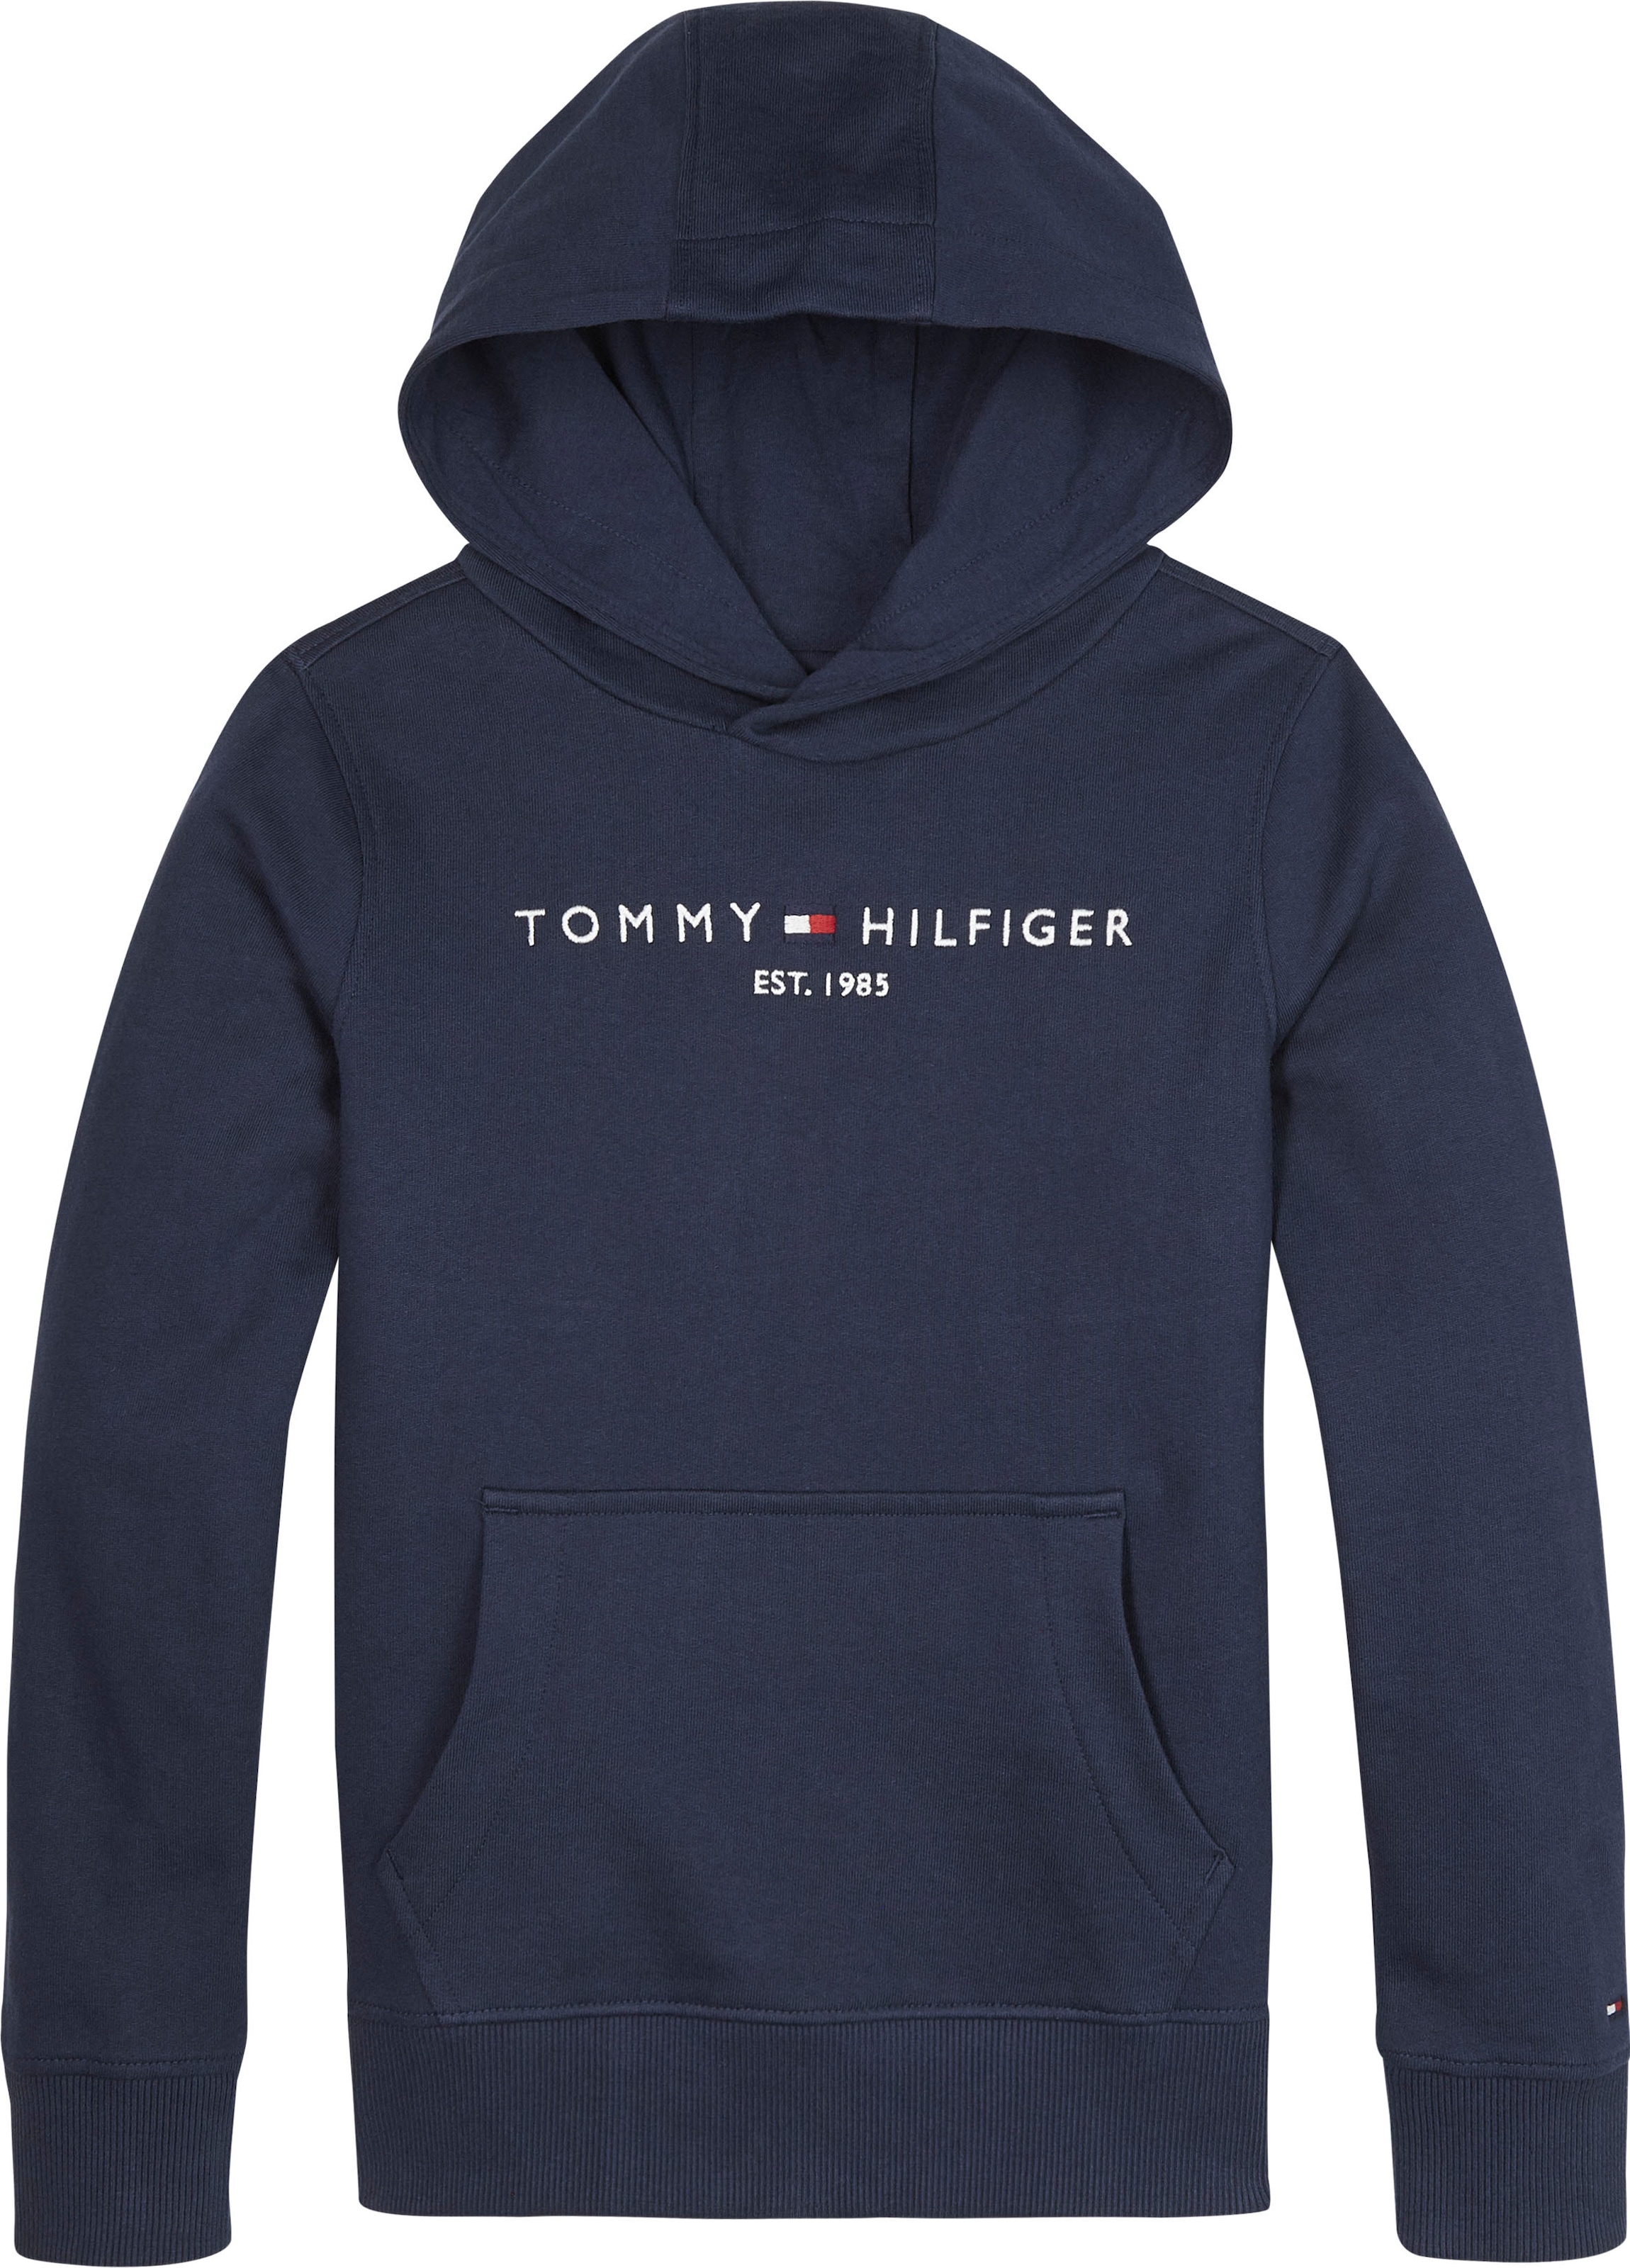 »ESSENTIAL Tommy Junior und Kapuzensweatshirt Mädchen HOODIE«, Kids Kinder bei MiniMe,für Hilfiger Jungen OTTO kaufen